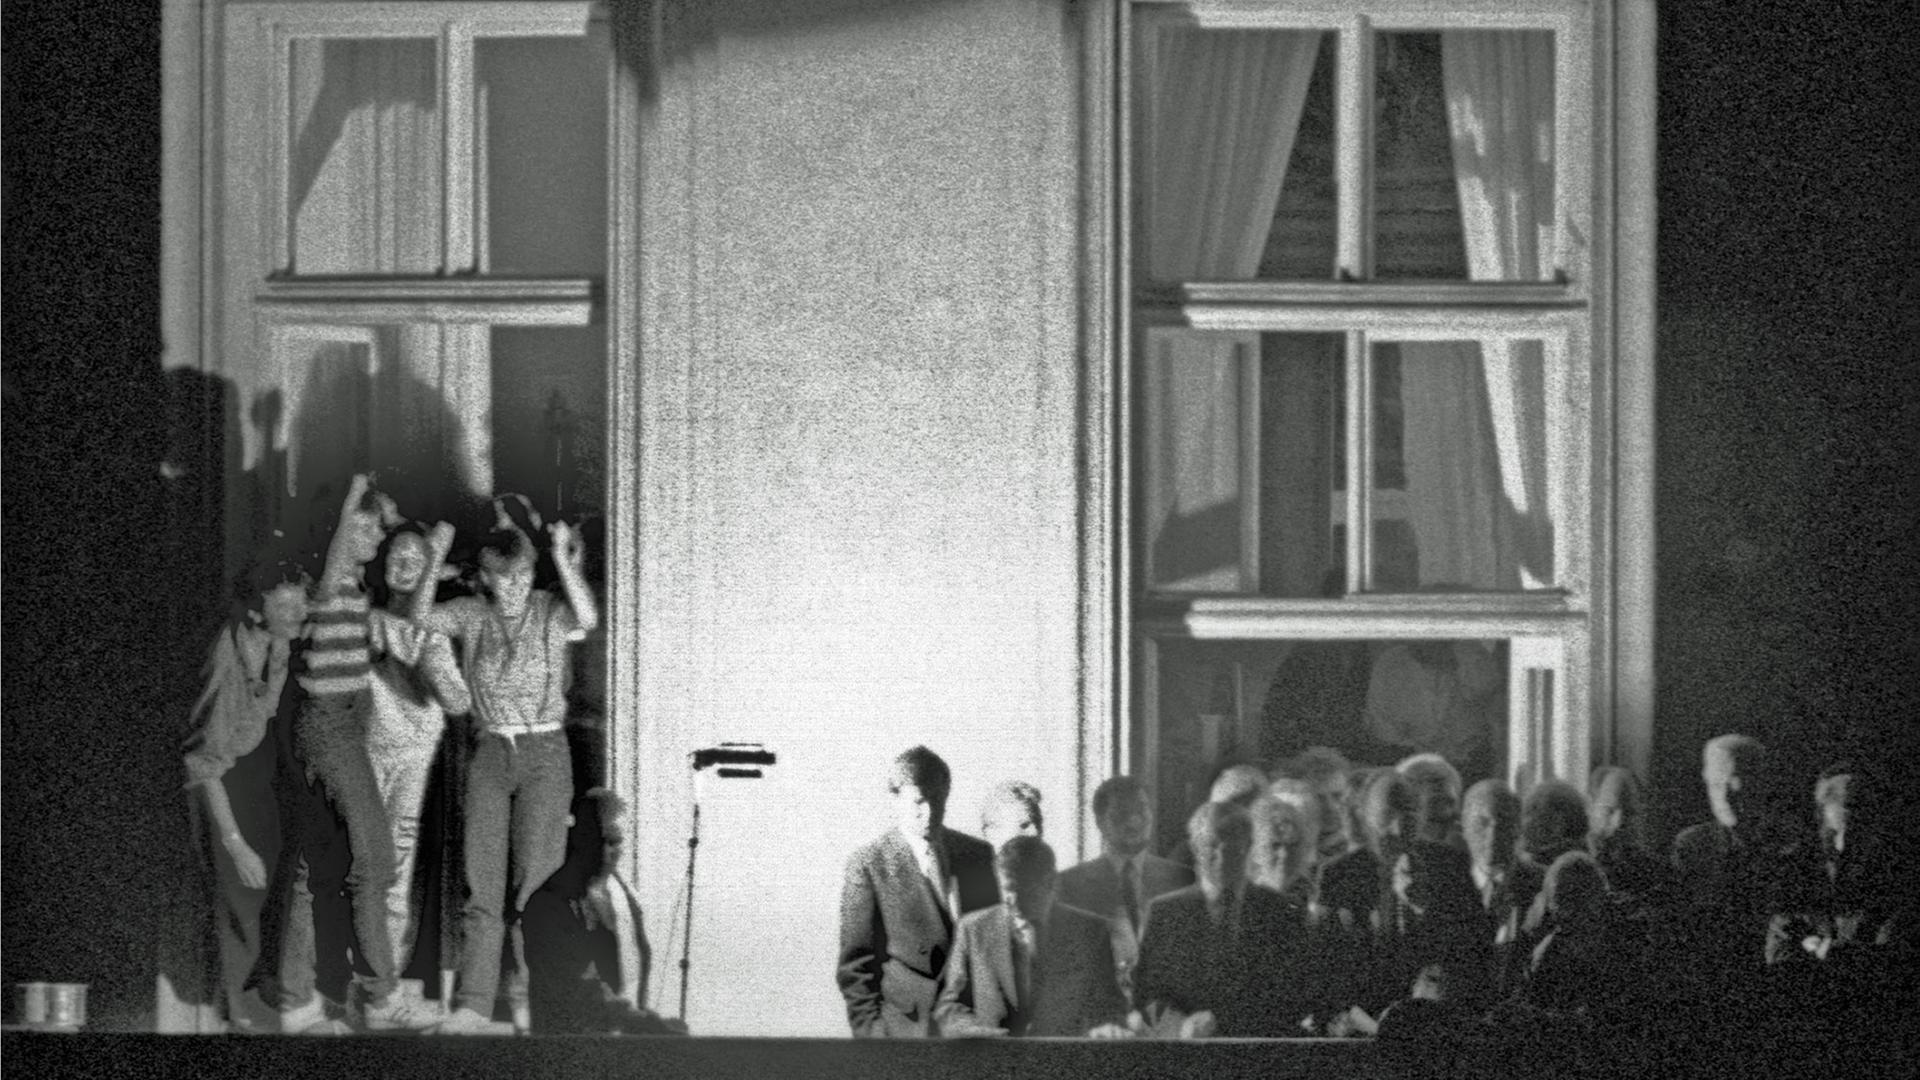 Bundesaußenminister Hans-Dietrich Genscher (Mitte vor dem Fensterkreuz rechts) verkündet am 30.09.1989 kurz vor 19 Uhr auf dem Balkon der Deutschen Botschaft in Prag: "Wir sind heute zu Ihnen gekommen, um Ihnen mitzuteilen, dass heute Ihre Ausreise....". Der weitere Wortlaut der Ankündigung der bechlossenen Ausreise der DDR-Flüchtlinge, die im Hof der Botschaft campierten, ging in tosendem Jubel unter.